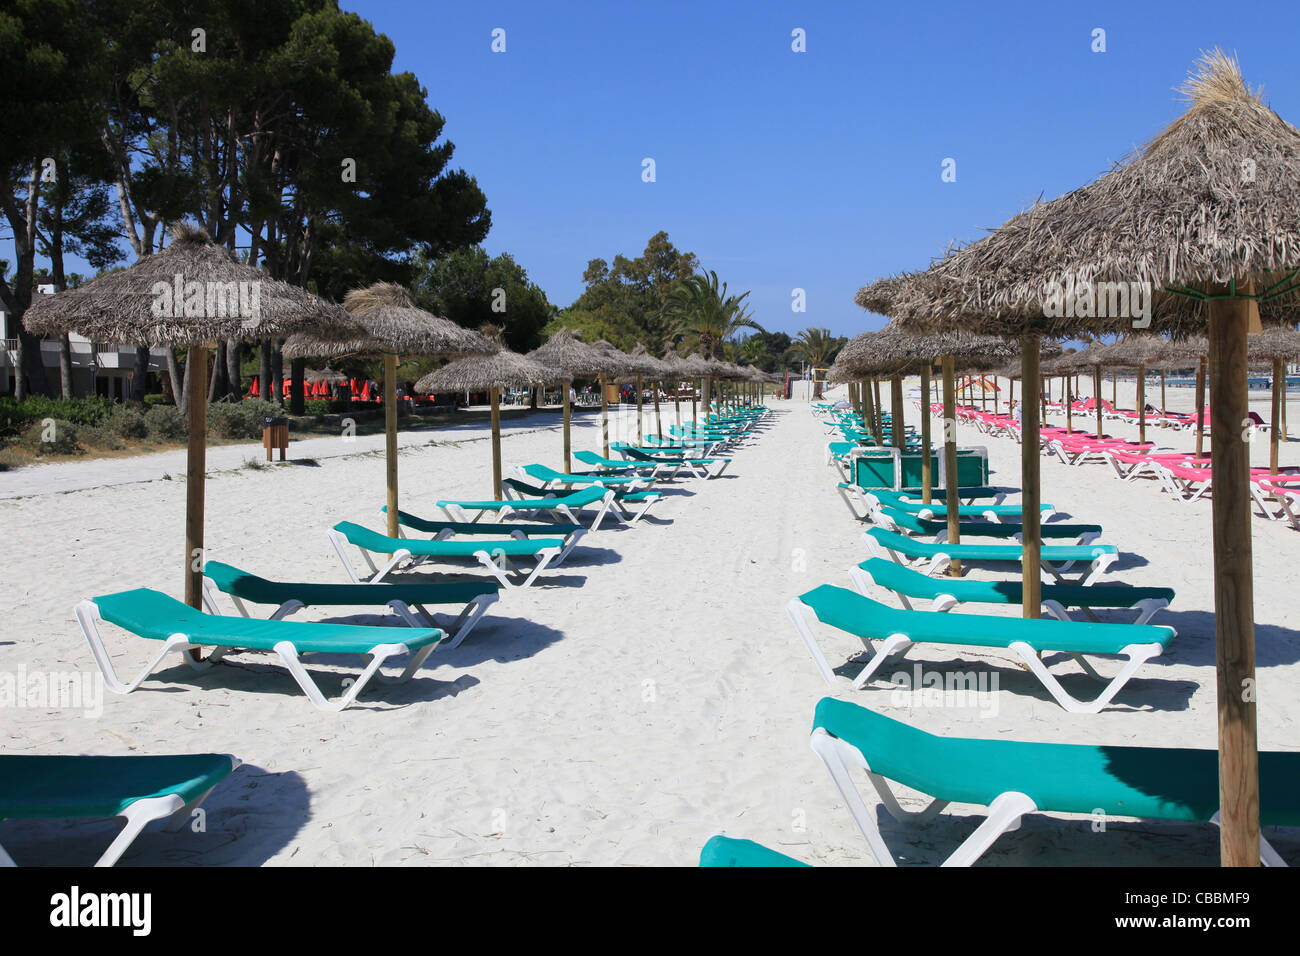 Hamacas y sombrillas de paja en la playa. Imagen tomada en Alcudia, en la  isla de Mallorca, Baleares, España Fotografía de stock - Alamy